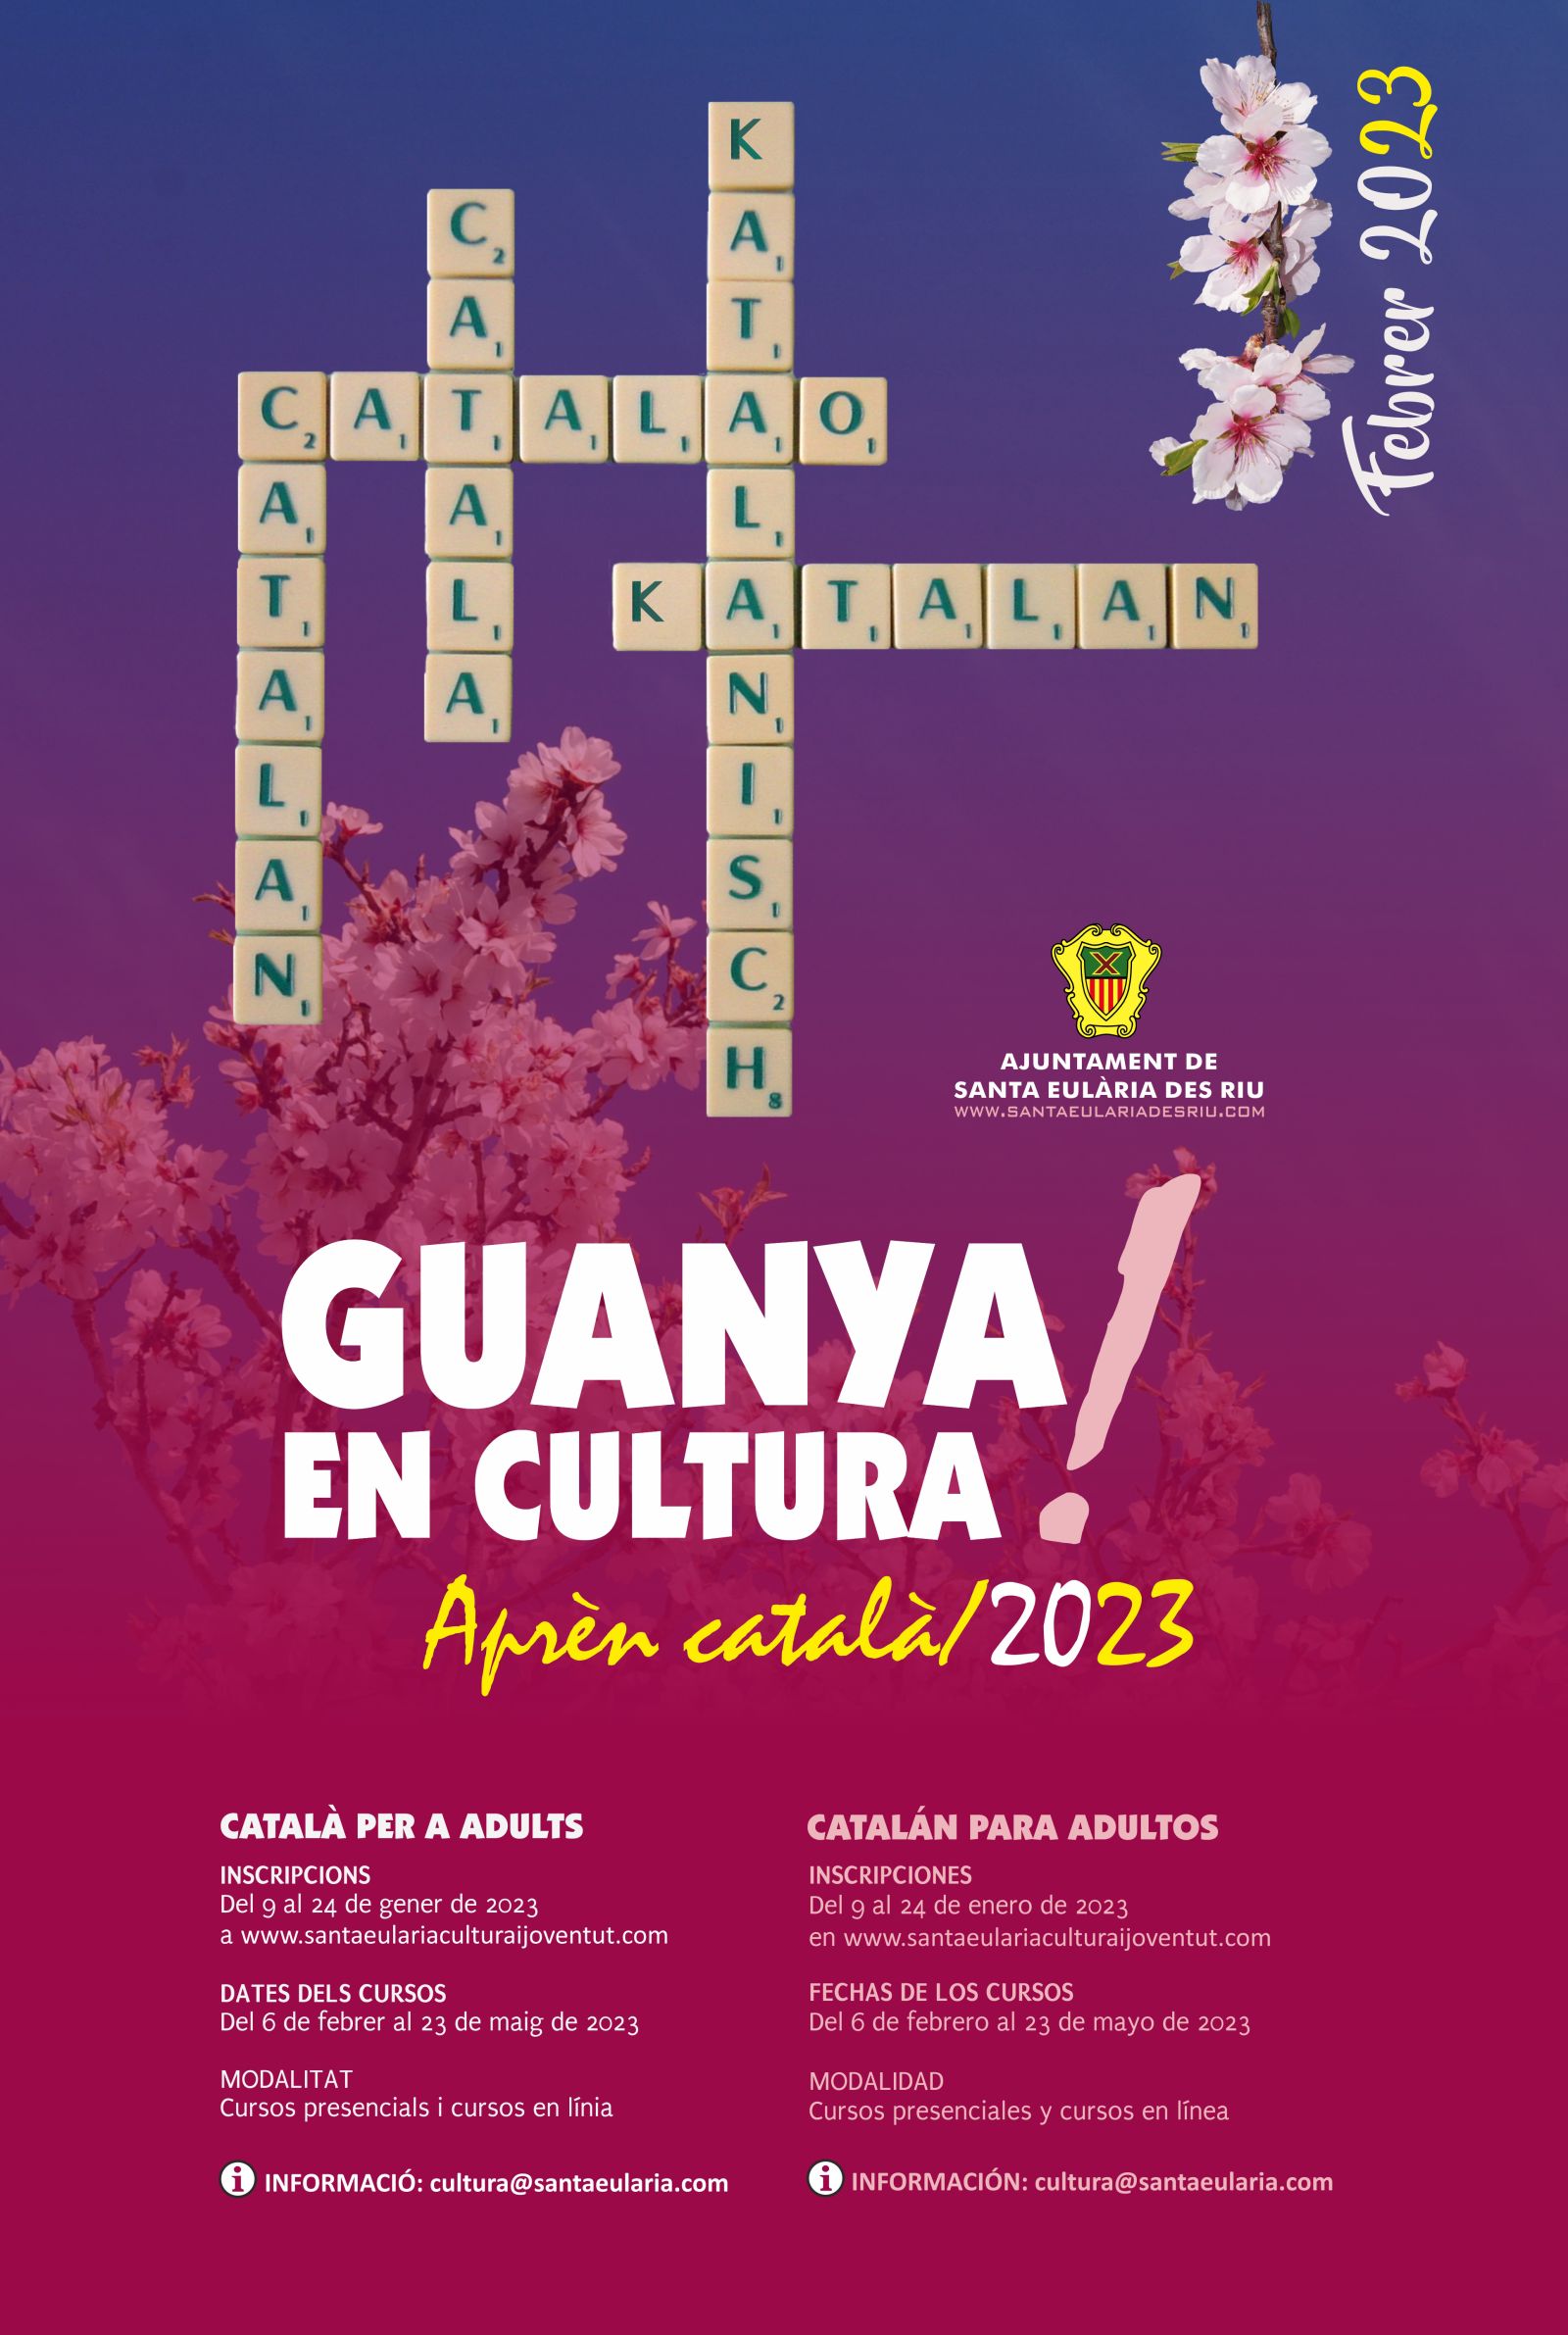 Nueva convocatoria de cursos de catalán para adultos con posibilidad de realizar la formación en línea